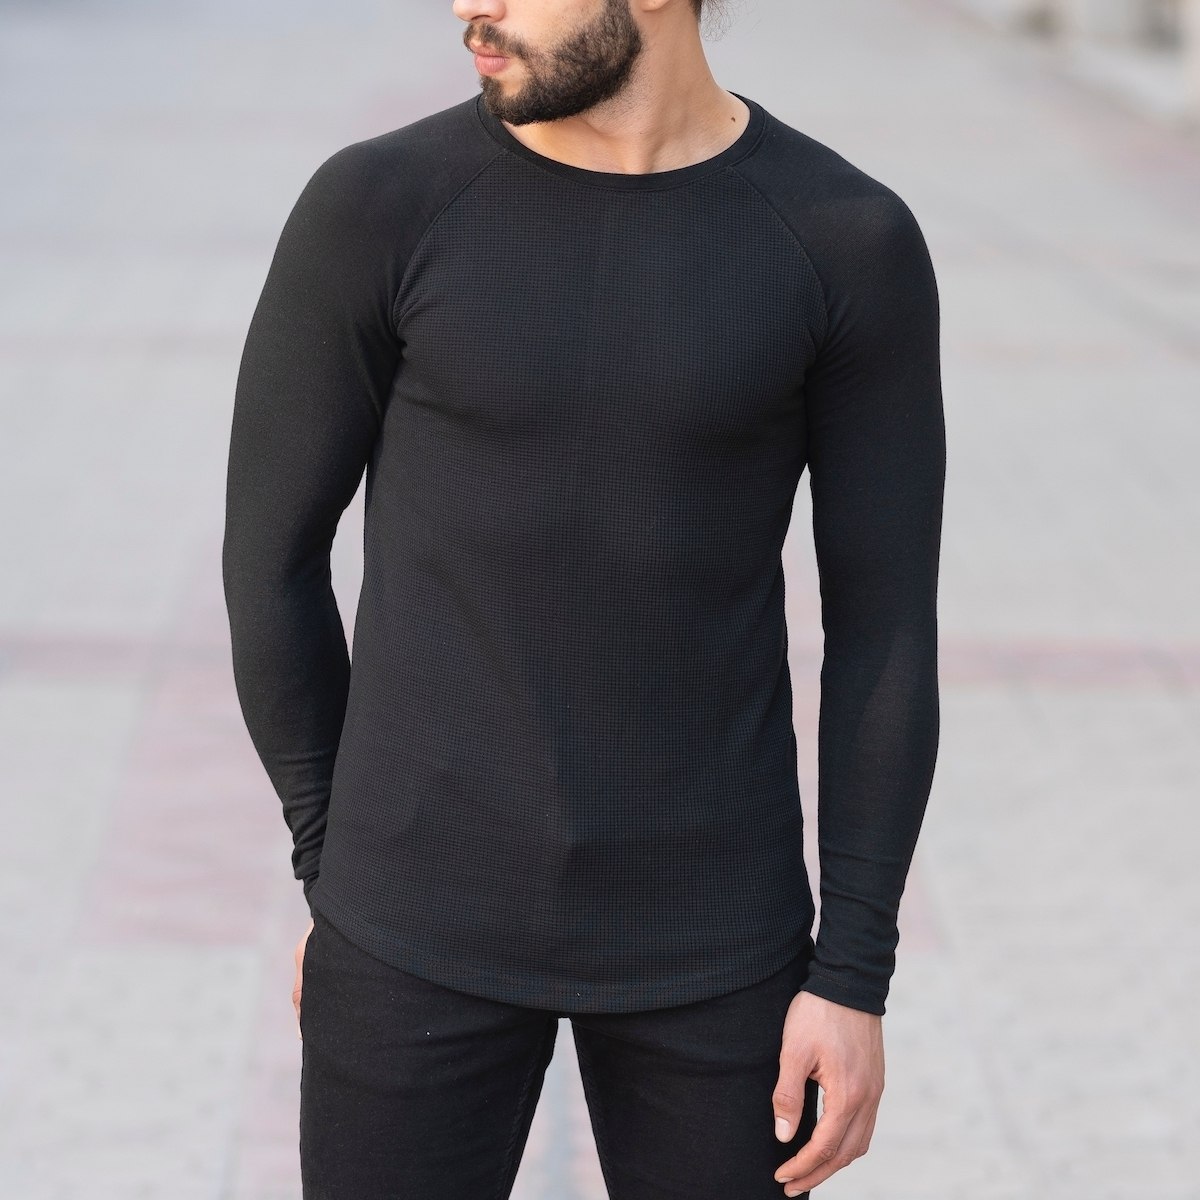 Herren Slim-Fit Sweatshirt in schwarz - 2